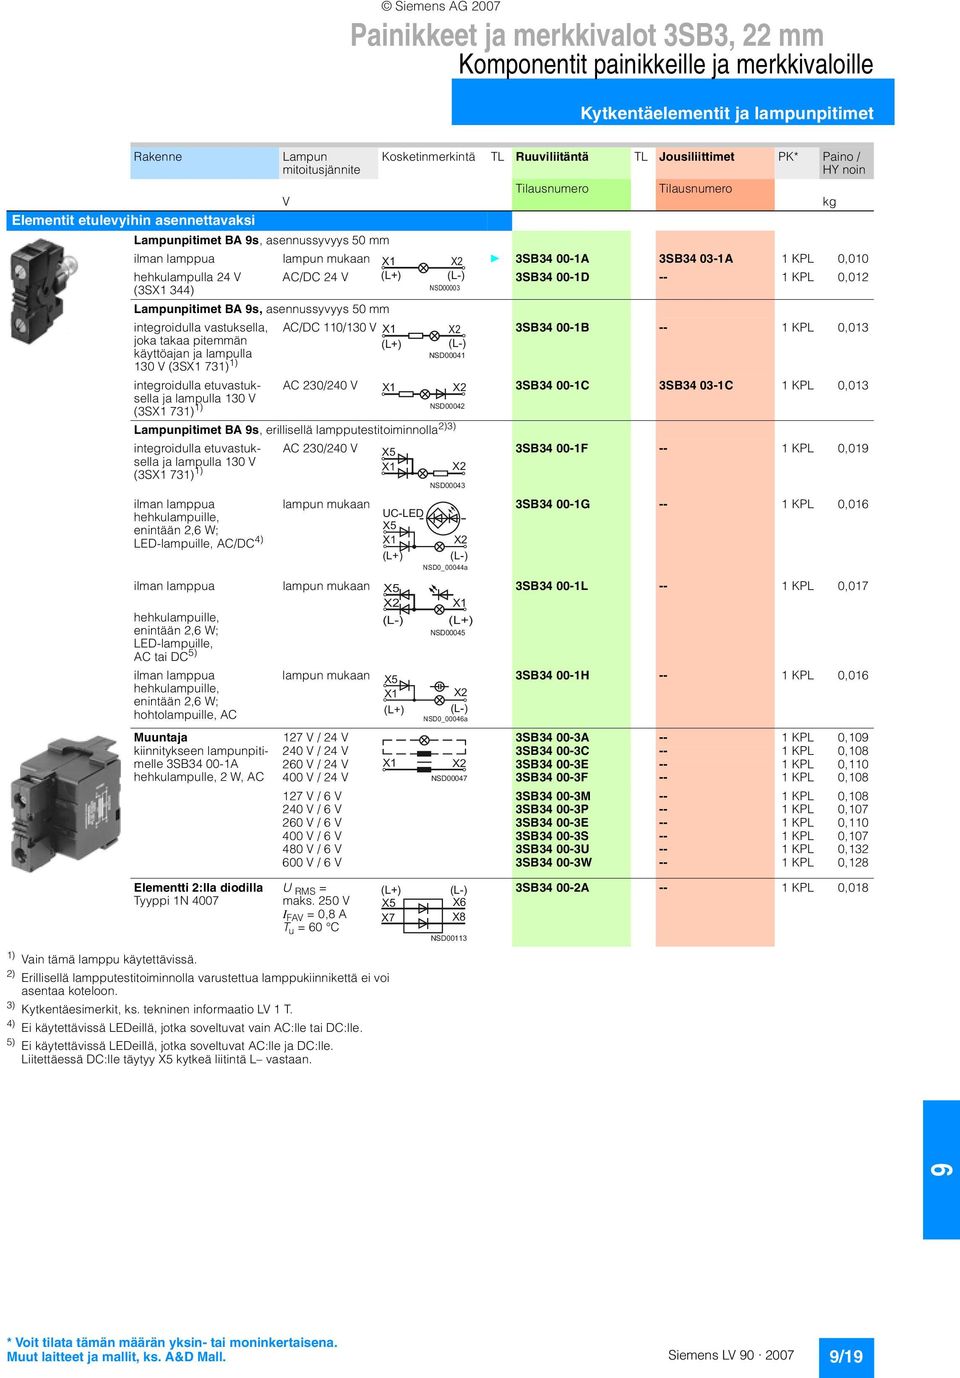 KPL 0,012 (3SX1 344) Lampunpitimet BA s, asennussyvyys 50 mm integroidulla vastuksella, AC/DC 110/130 V 3SB34 00-1B -- 1 KPL 0,013 joka takaa pitemmän käyttöajan ja lampulla 130 V (3SX1 731) 1)